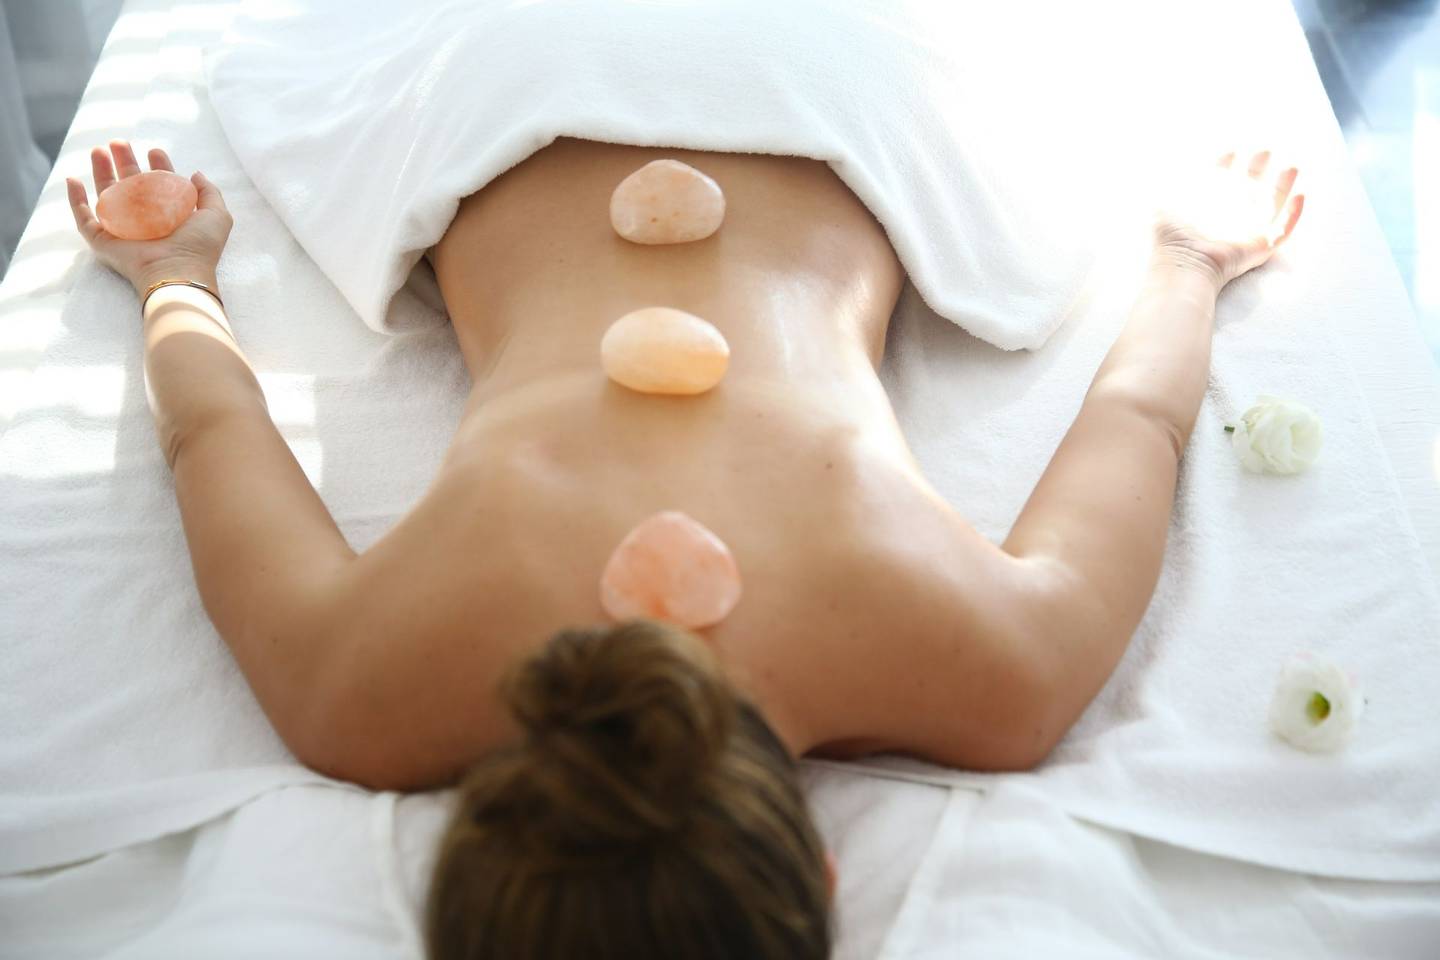 Heart Stone Massage Spa treatment at TIA Wellness Resort in Vietnam